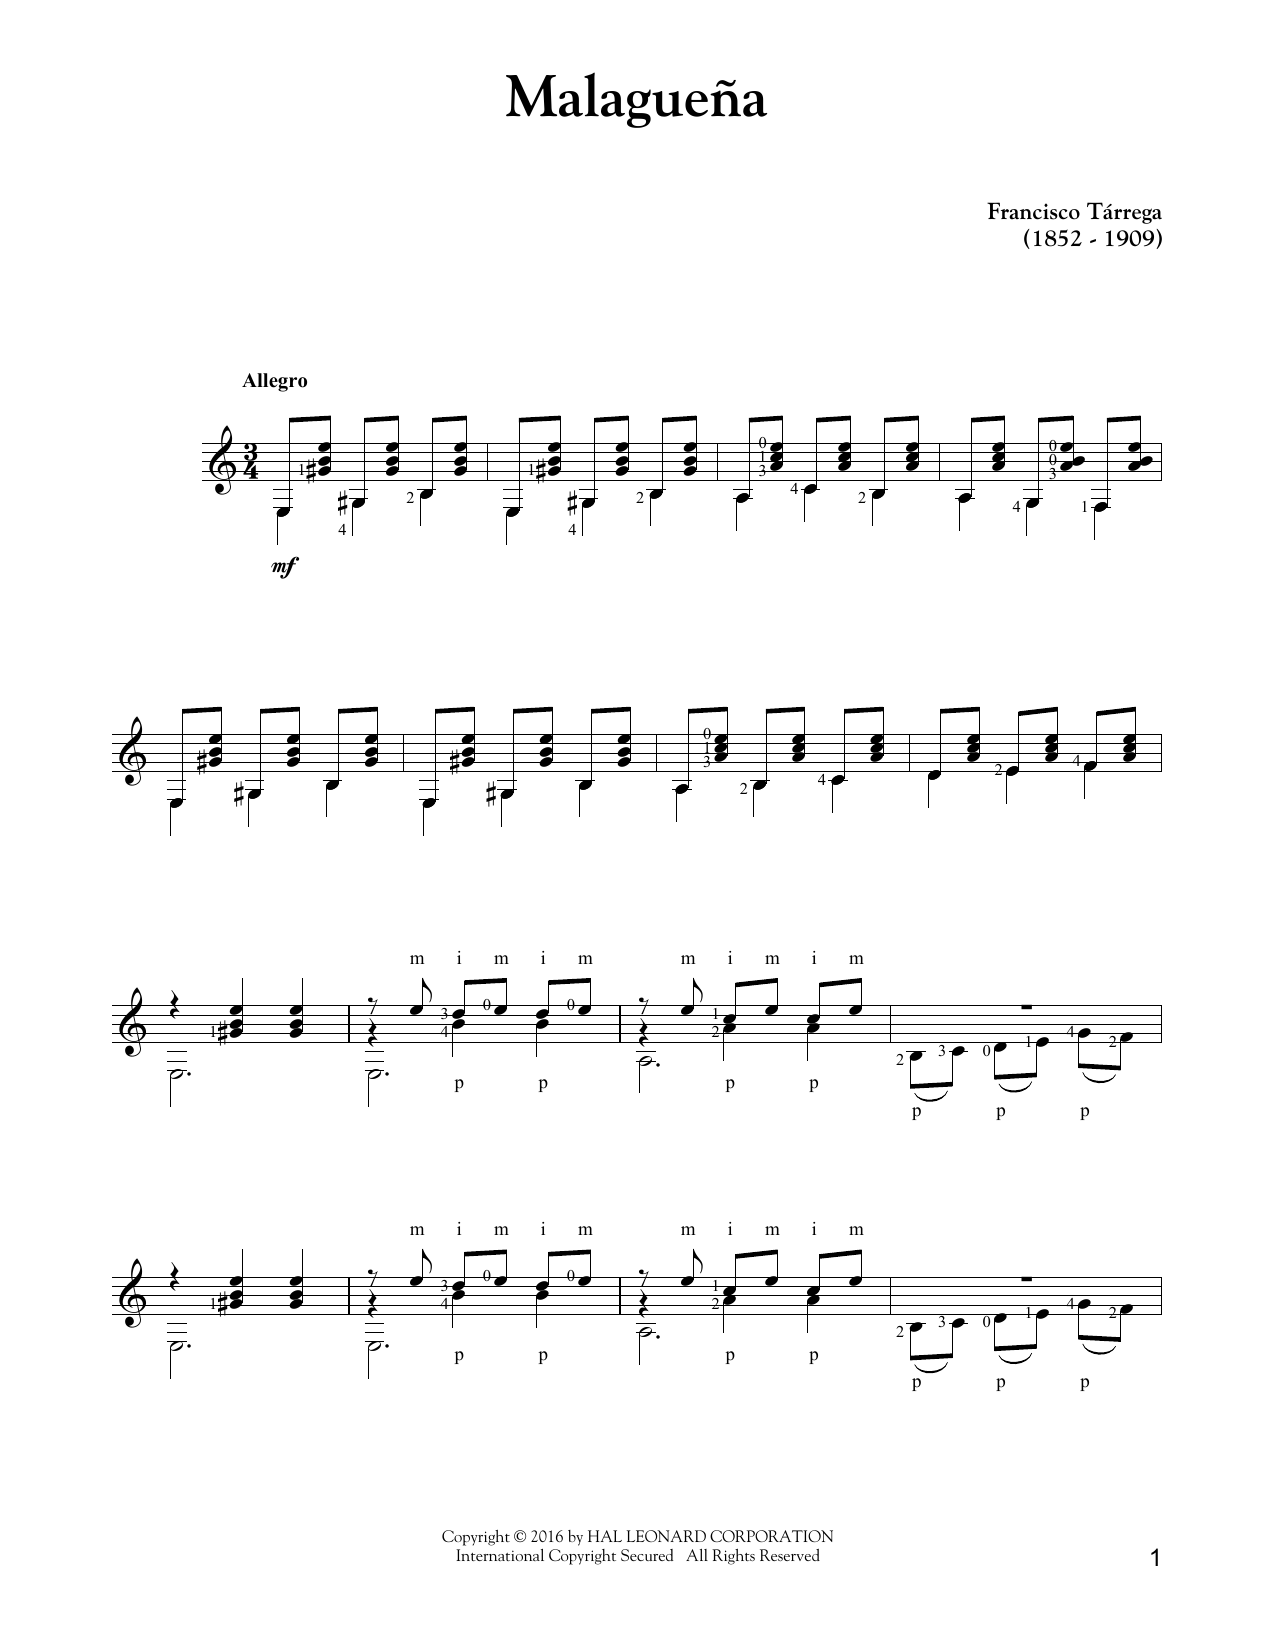 Francisco Tárrega Malaguena sheet music notes and chords arranged for Solo Guitar